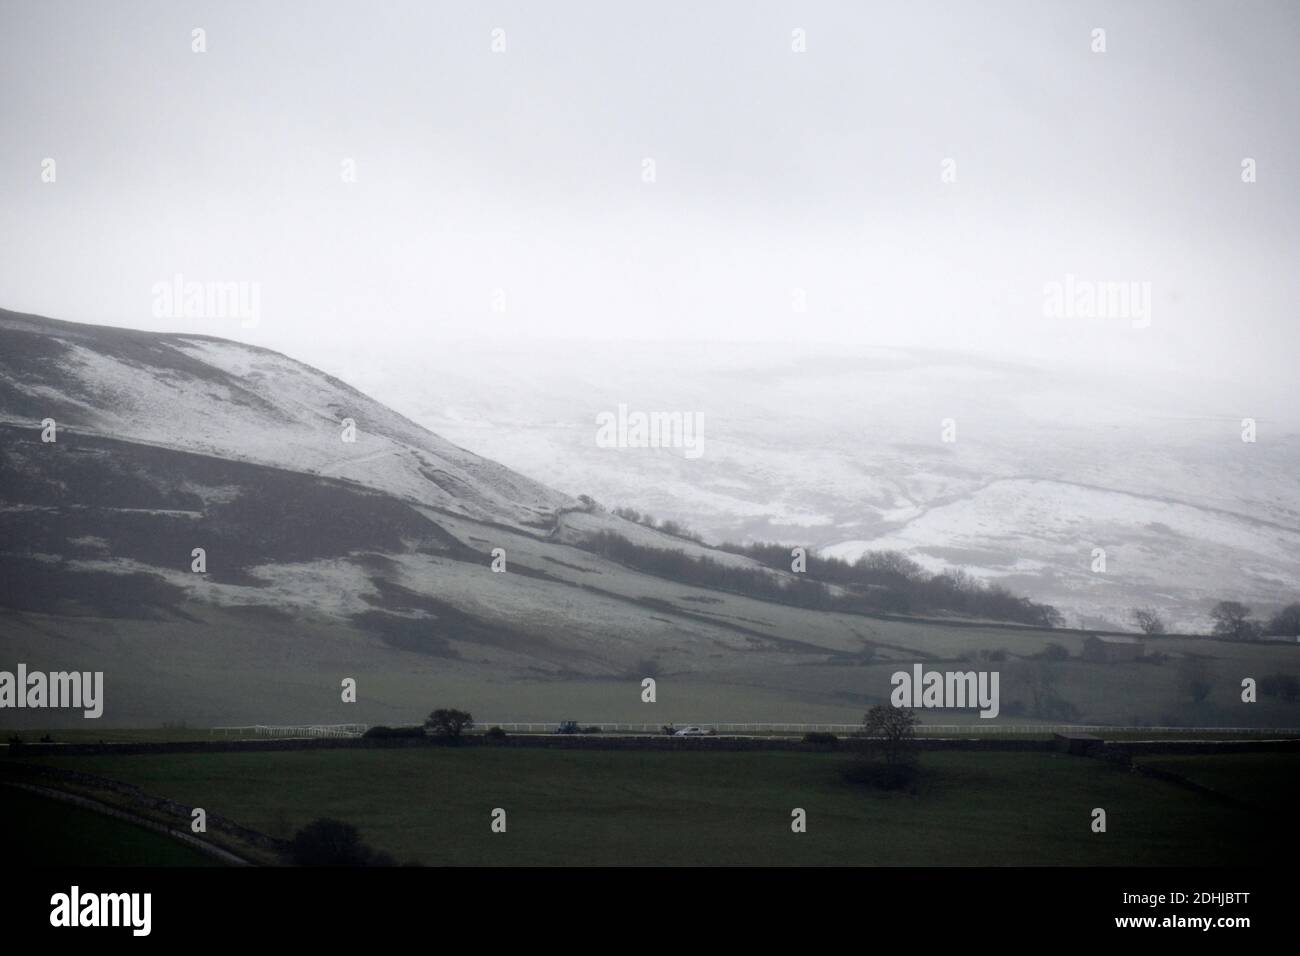 Nella foto è raffigurata una scena innevata nello Yorkshire Dales sopra Leyburn. Tempo neve neve neve neve neve neve neve neve neve neve neve Foto Stock